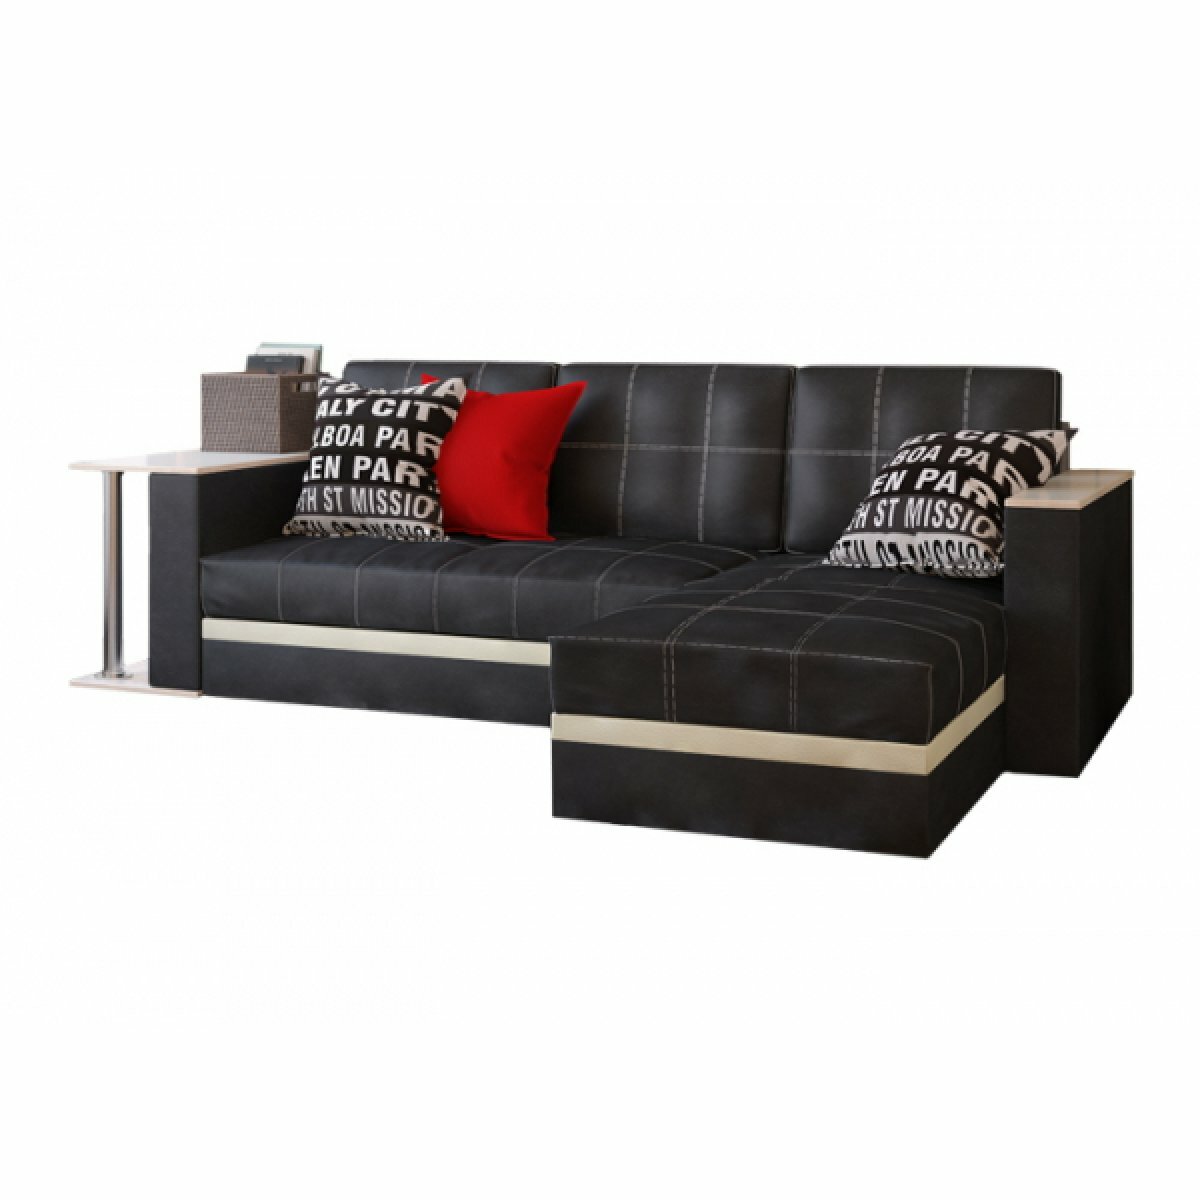 Угловой диван с баром "Атлант" - Черный матовый (кожзам), дуб беленый